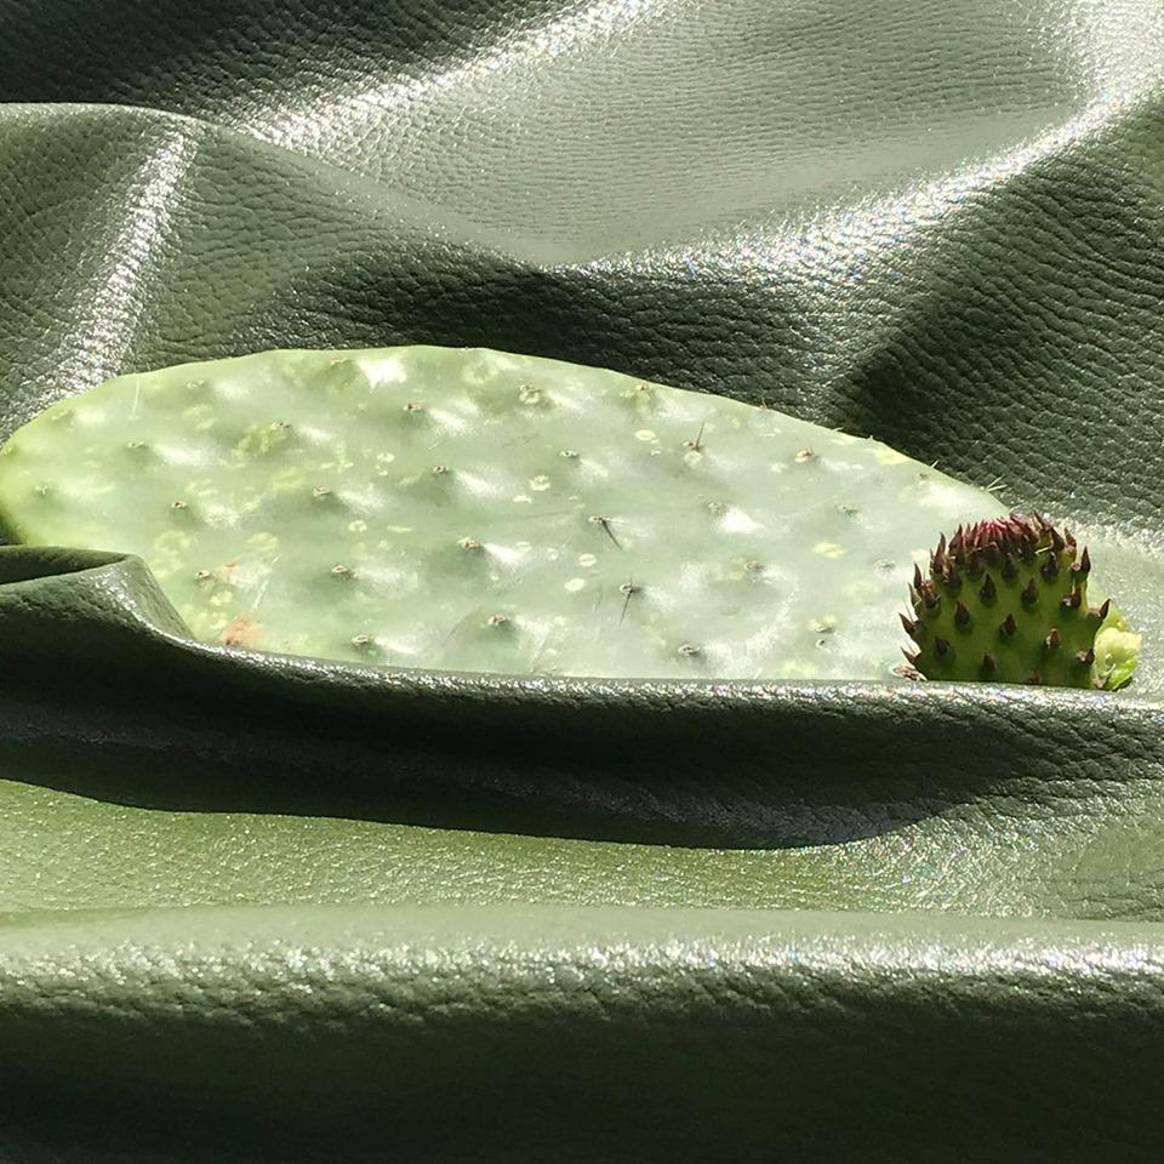 Kaktusleder ist eine der innovativen Materialien mit denen Fassbender arbeitet. Bild: Fassbender